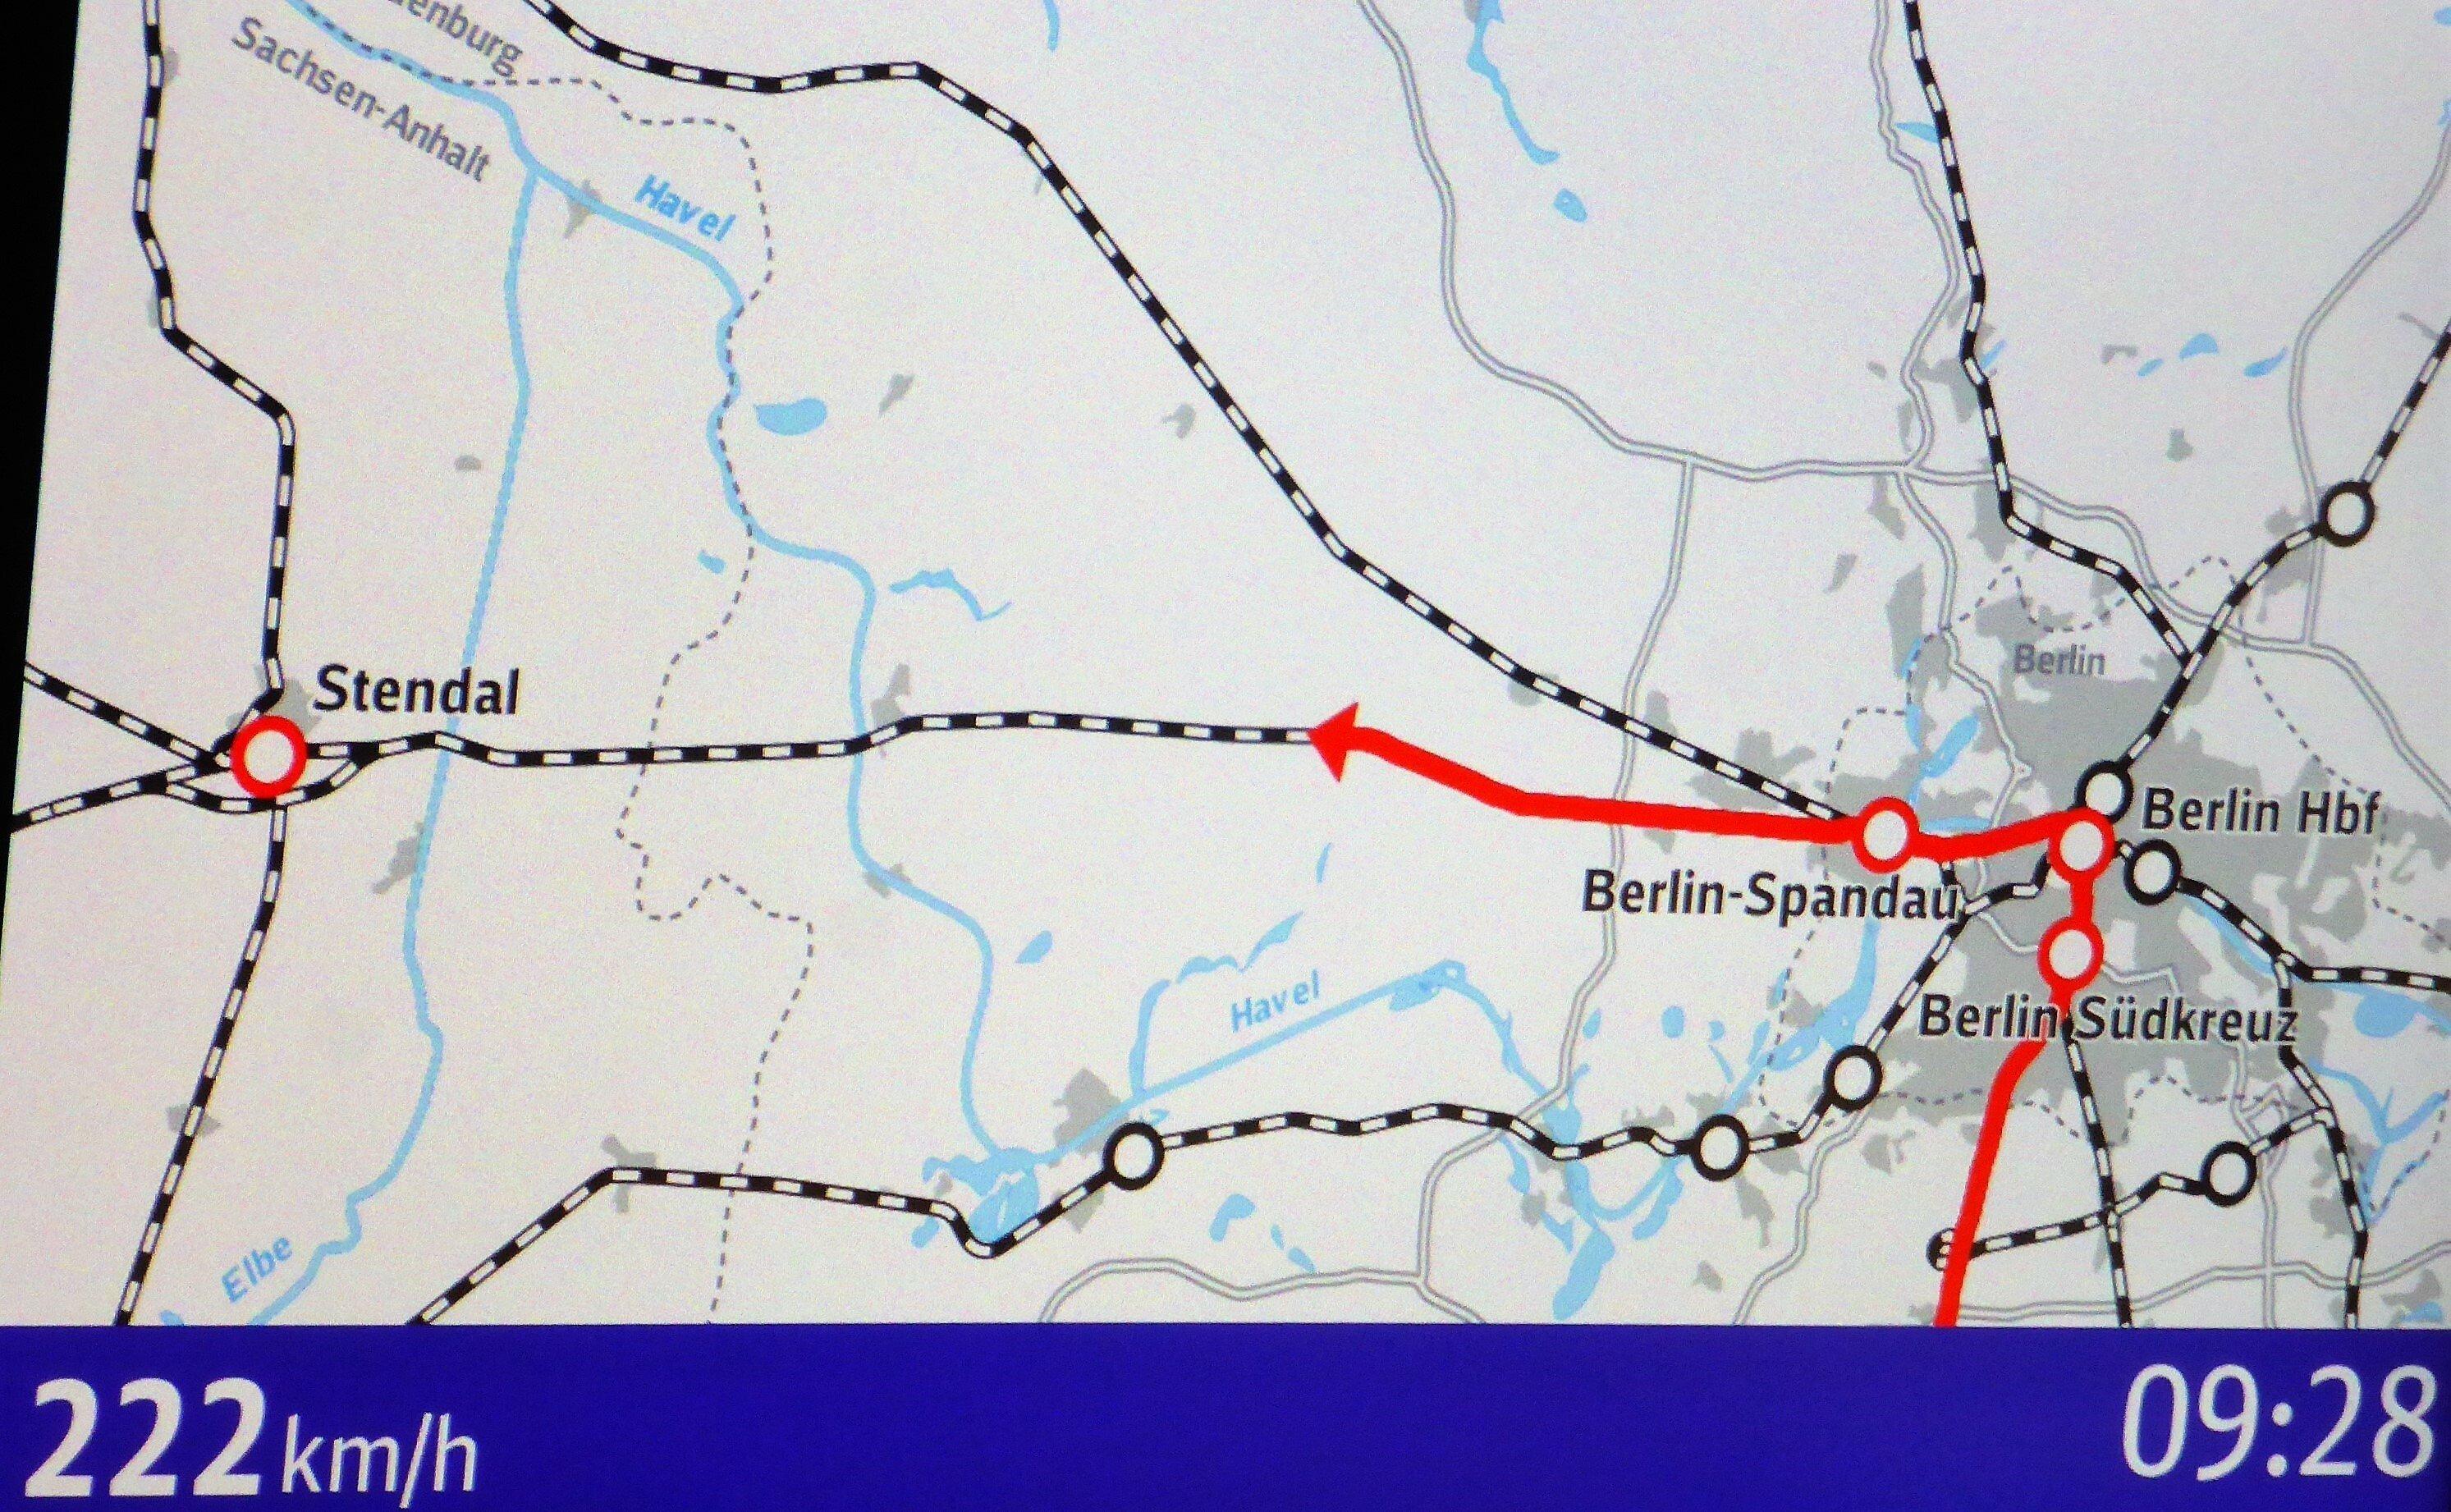 Übersicht der Fahrtroute zwischen Berlin, Havelland und Elbe. Am unteren Rand des abfotografierten Bildschirms ist die ICE-Geschwindigkeit um 9.28 Uhr mit 222 Kilometern pro Stunde angegeben.